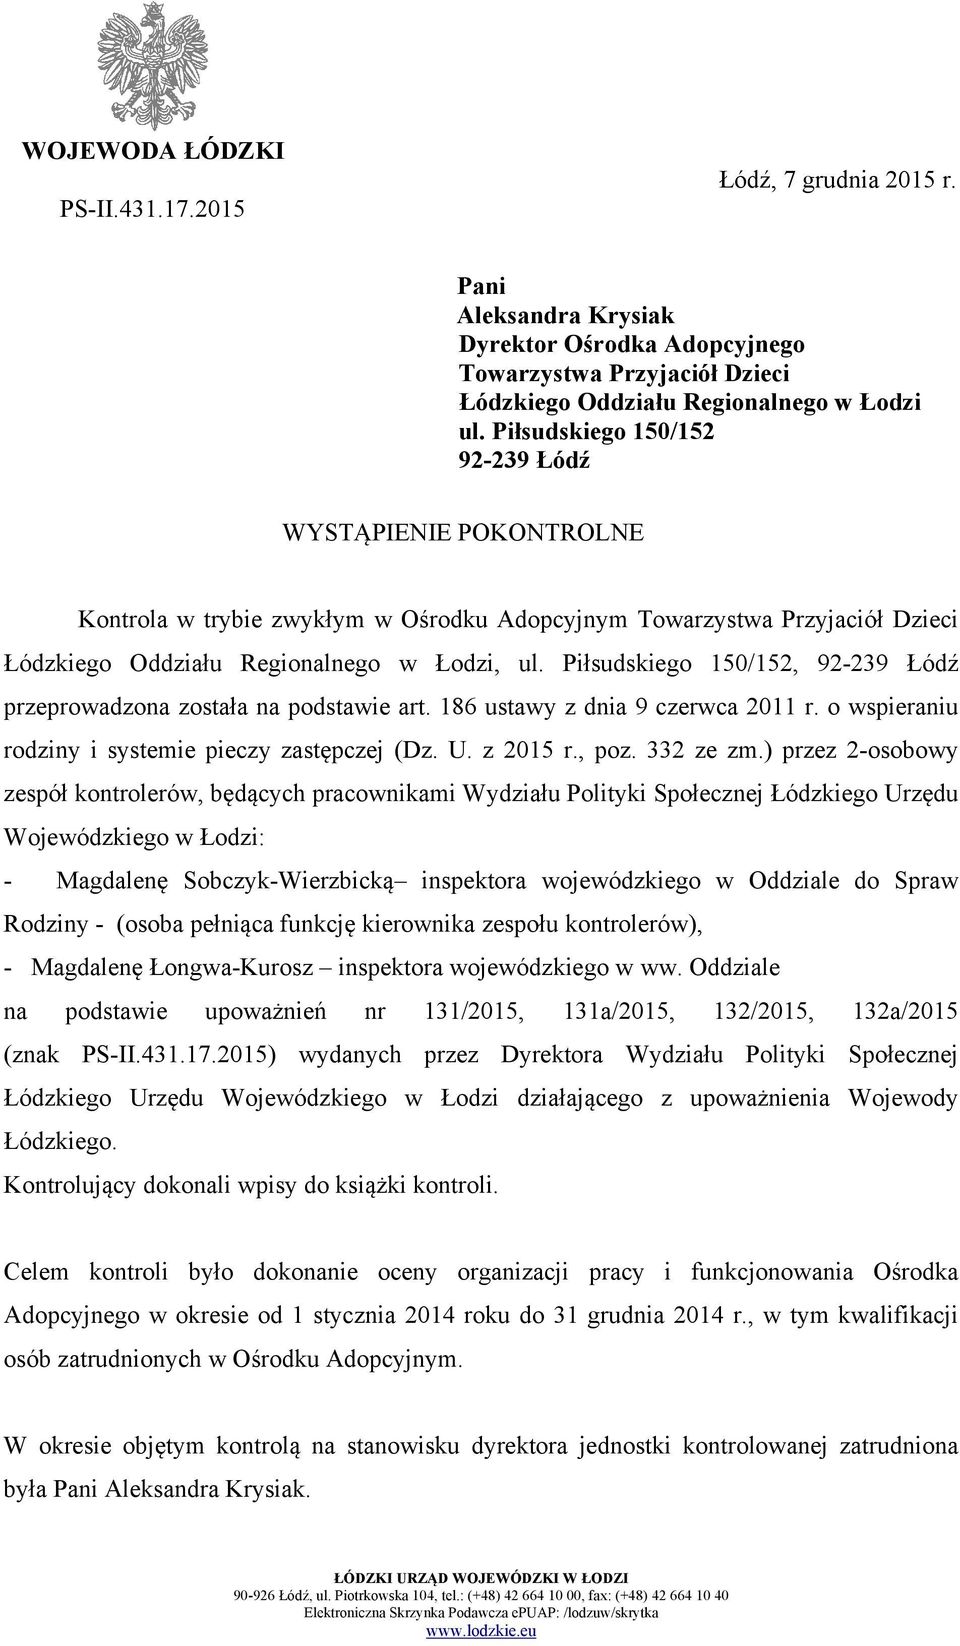 Piłsudskiego 150/152, 92-239 Łódź przeprowadzona została na podstawie art. 186 ustawy z dnia 9 czerwca 2011 r. o wspieraniu rodziny i systemie pieczy zastępczej (Dz. U. z 2015 r., poz. 332 ze zm.